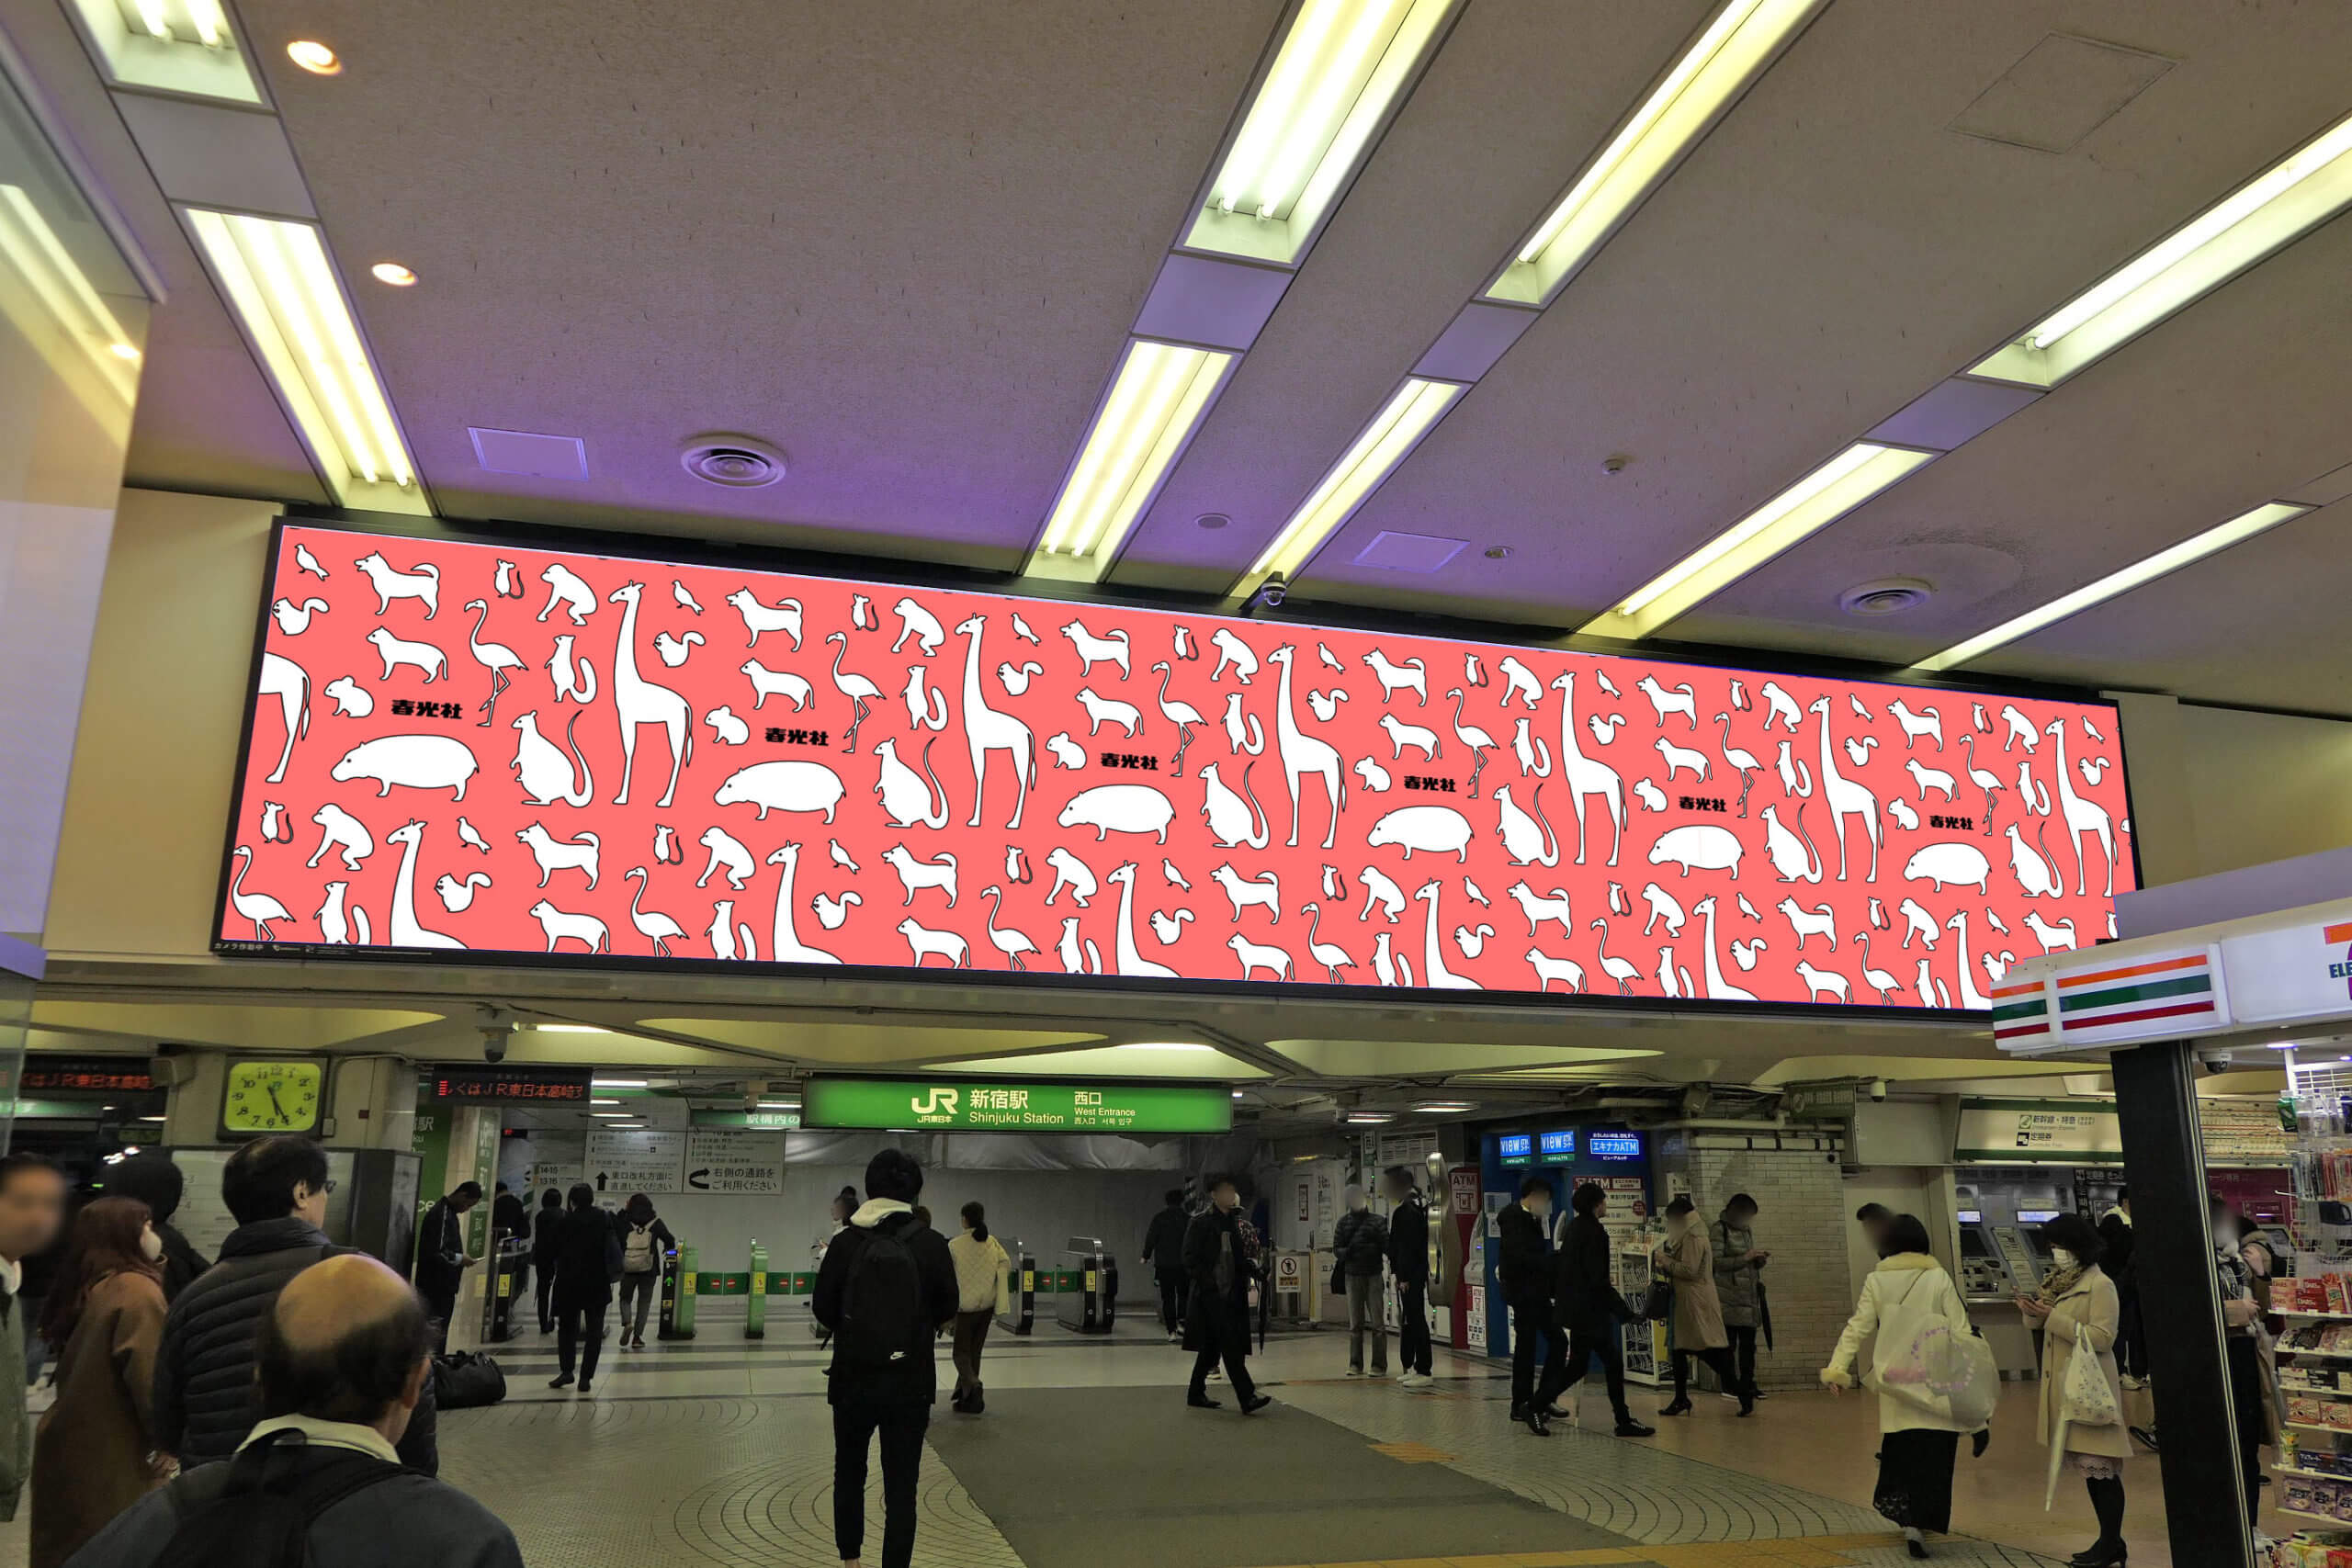 小田急新宿駅西口地下エリア壁面に設置されている横型デジタルサイネージ